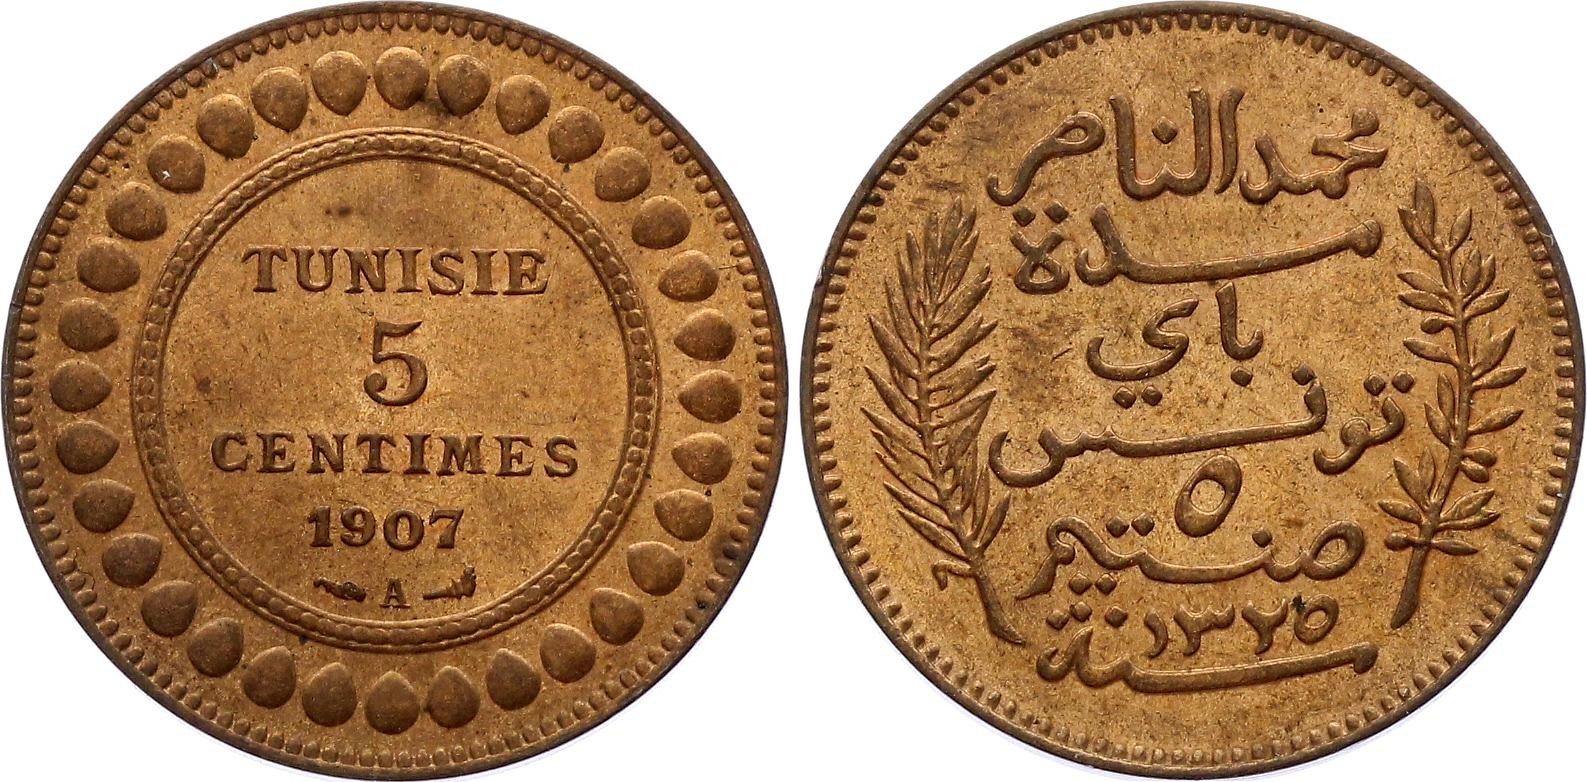 Tunisia 5 Centimes 1907 A